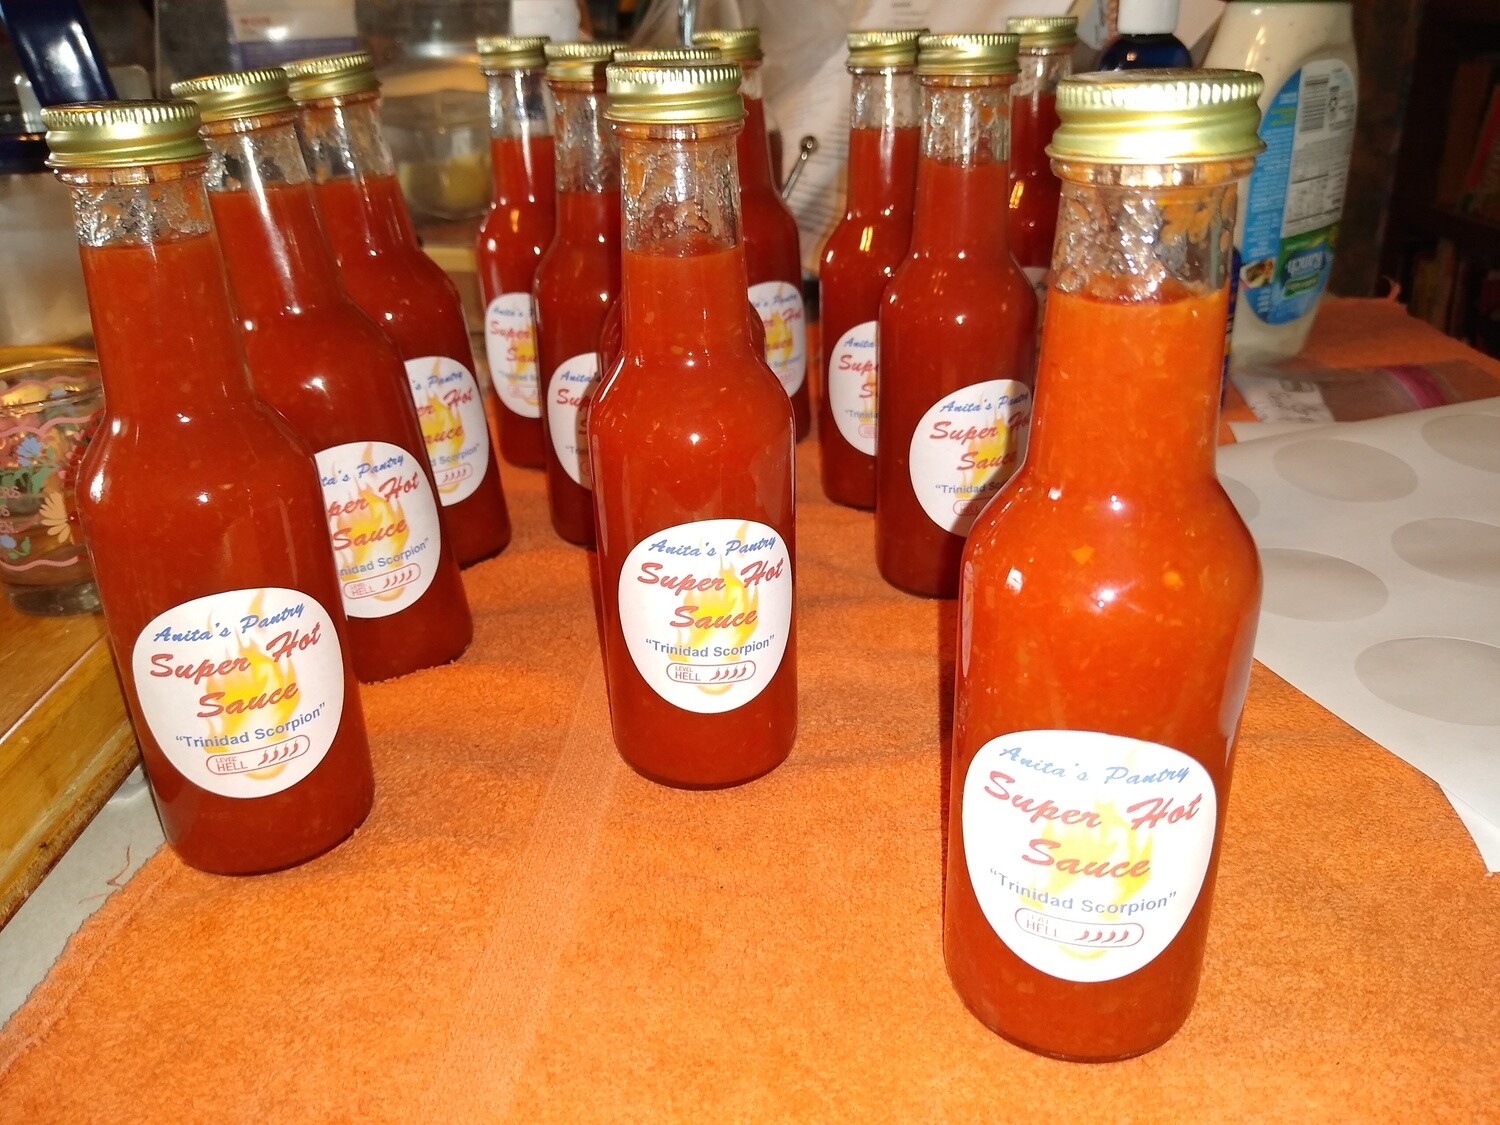 Anita's Pantry Super Hot Sauce